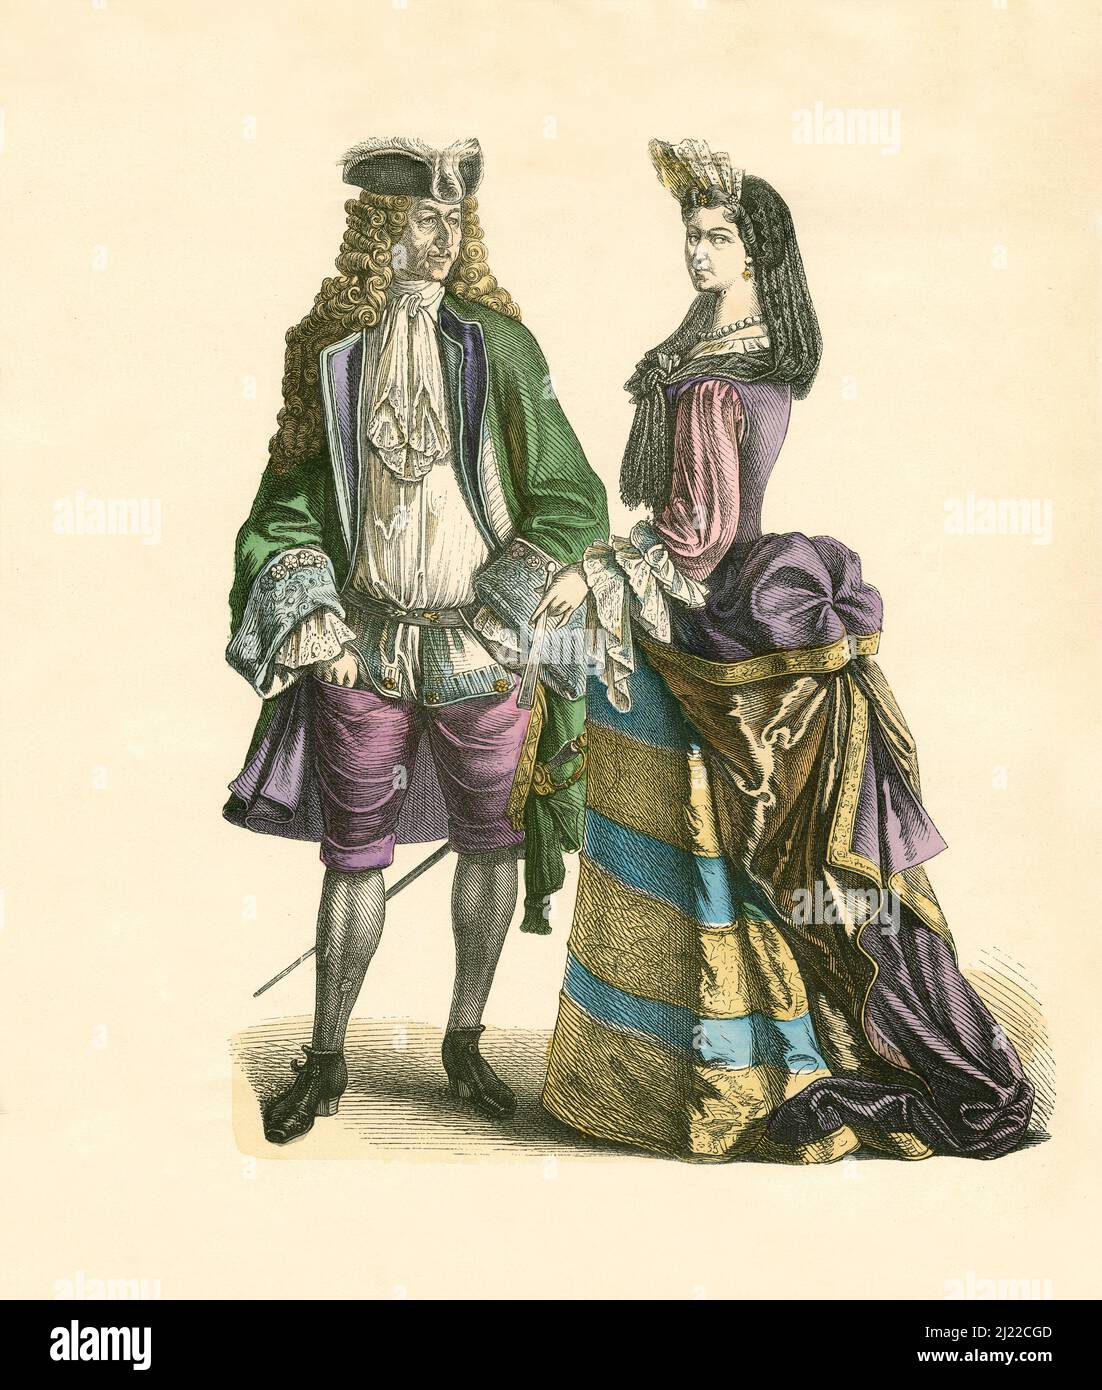 Gentleman e Lady francesi, primo terzo del 18th secolo, Illustrazione, la Storia del Costume, Braun & Schneider, Monaco di Baviera, Germania, 1861-1880 Foto Stock